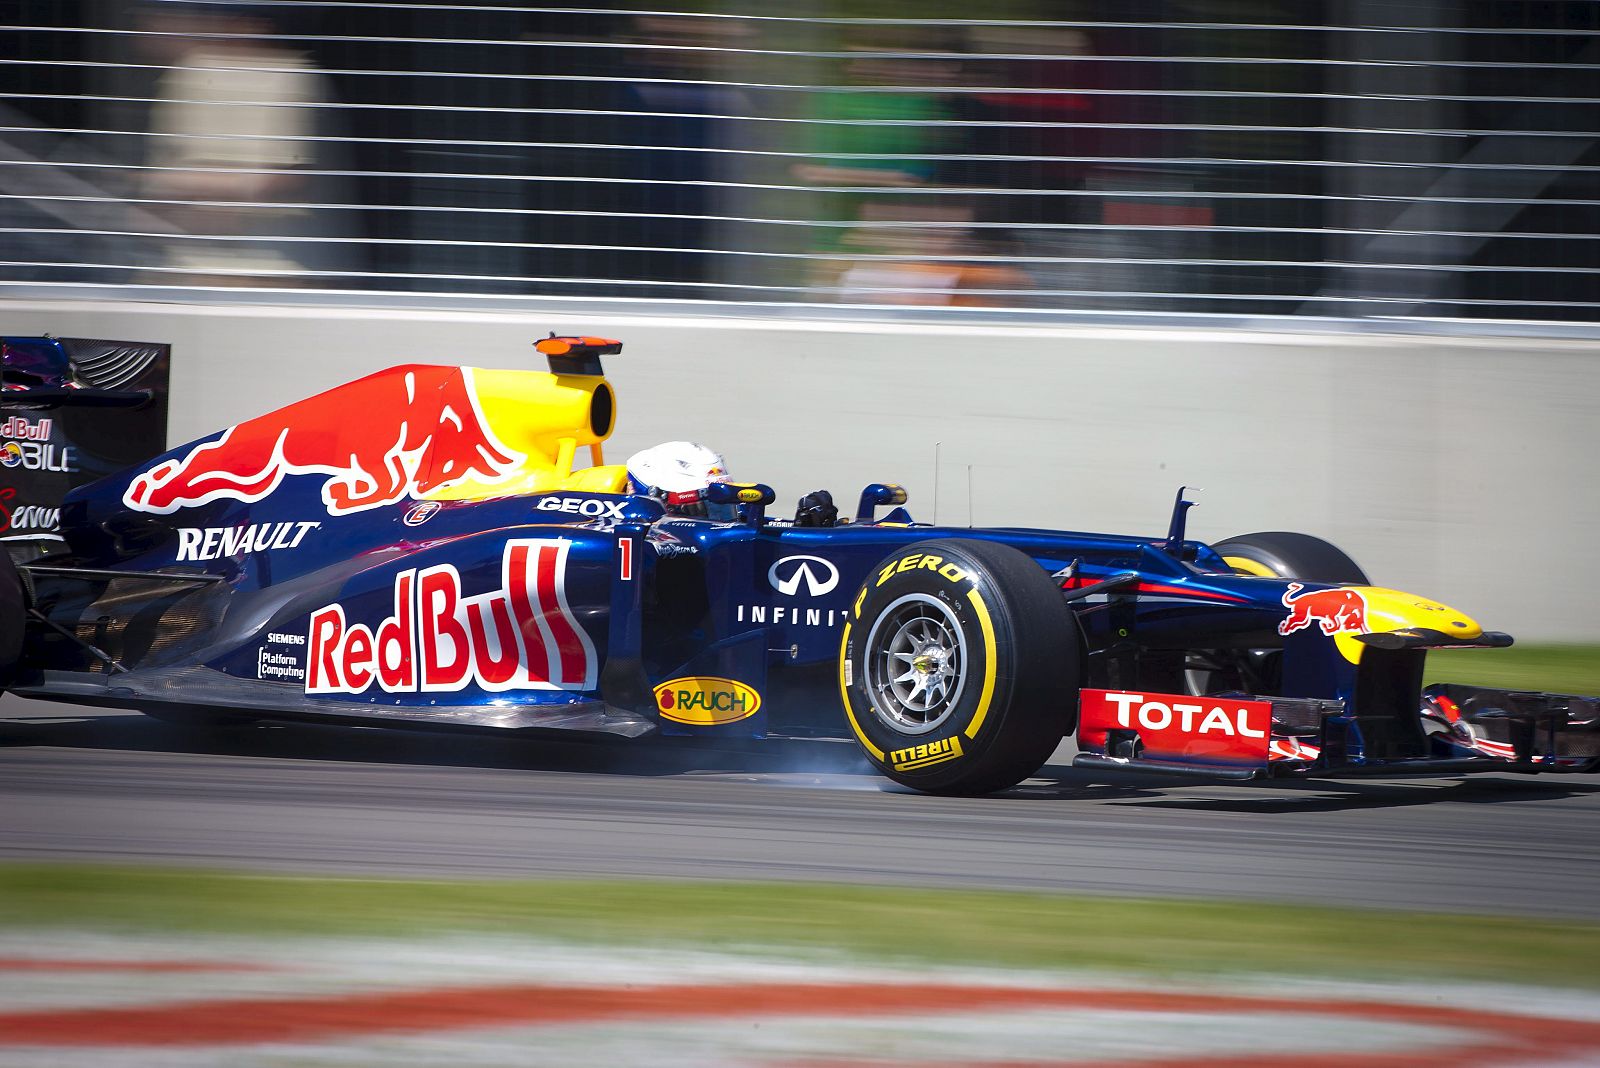 El piloto aleman de Red Bull, Sebastian Vettel, conduce su monoplaza durante la tercera sesión de entrenamientos